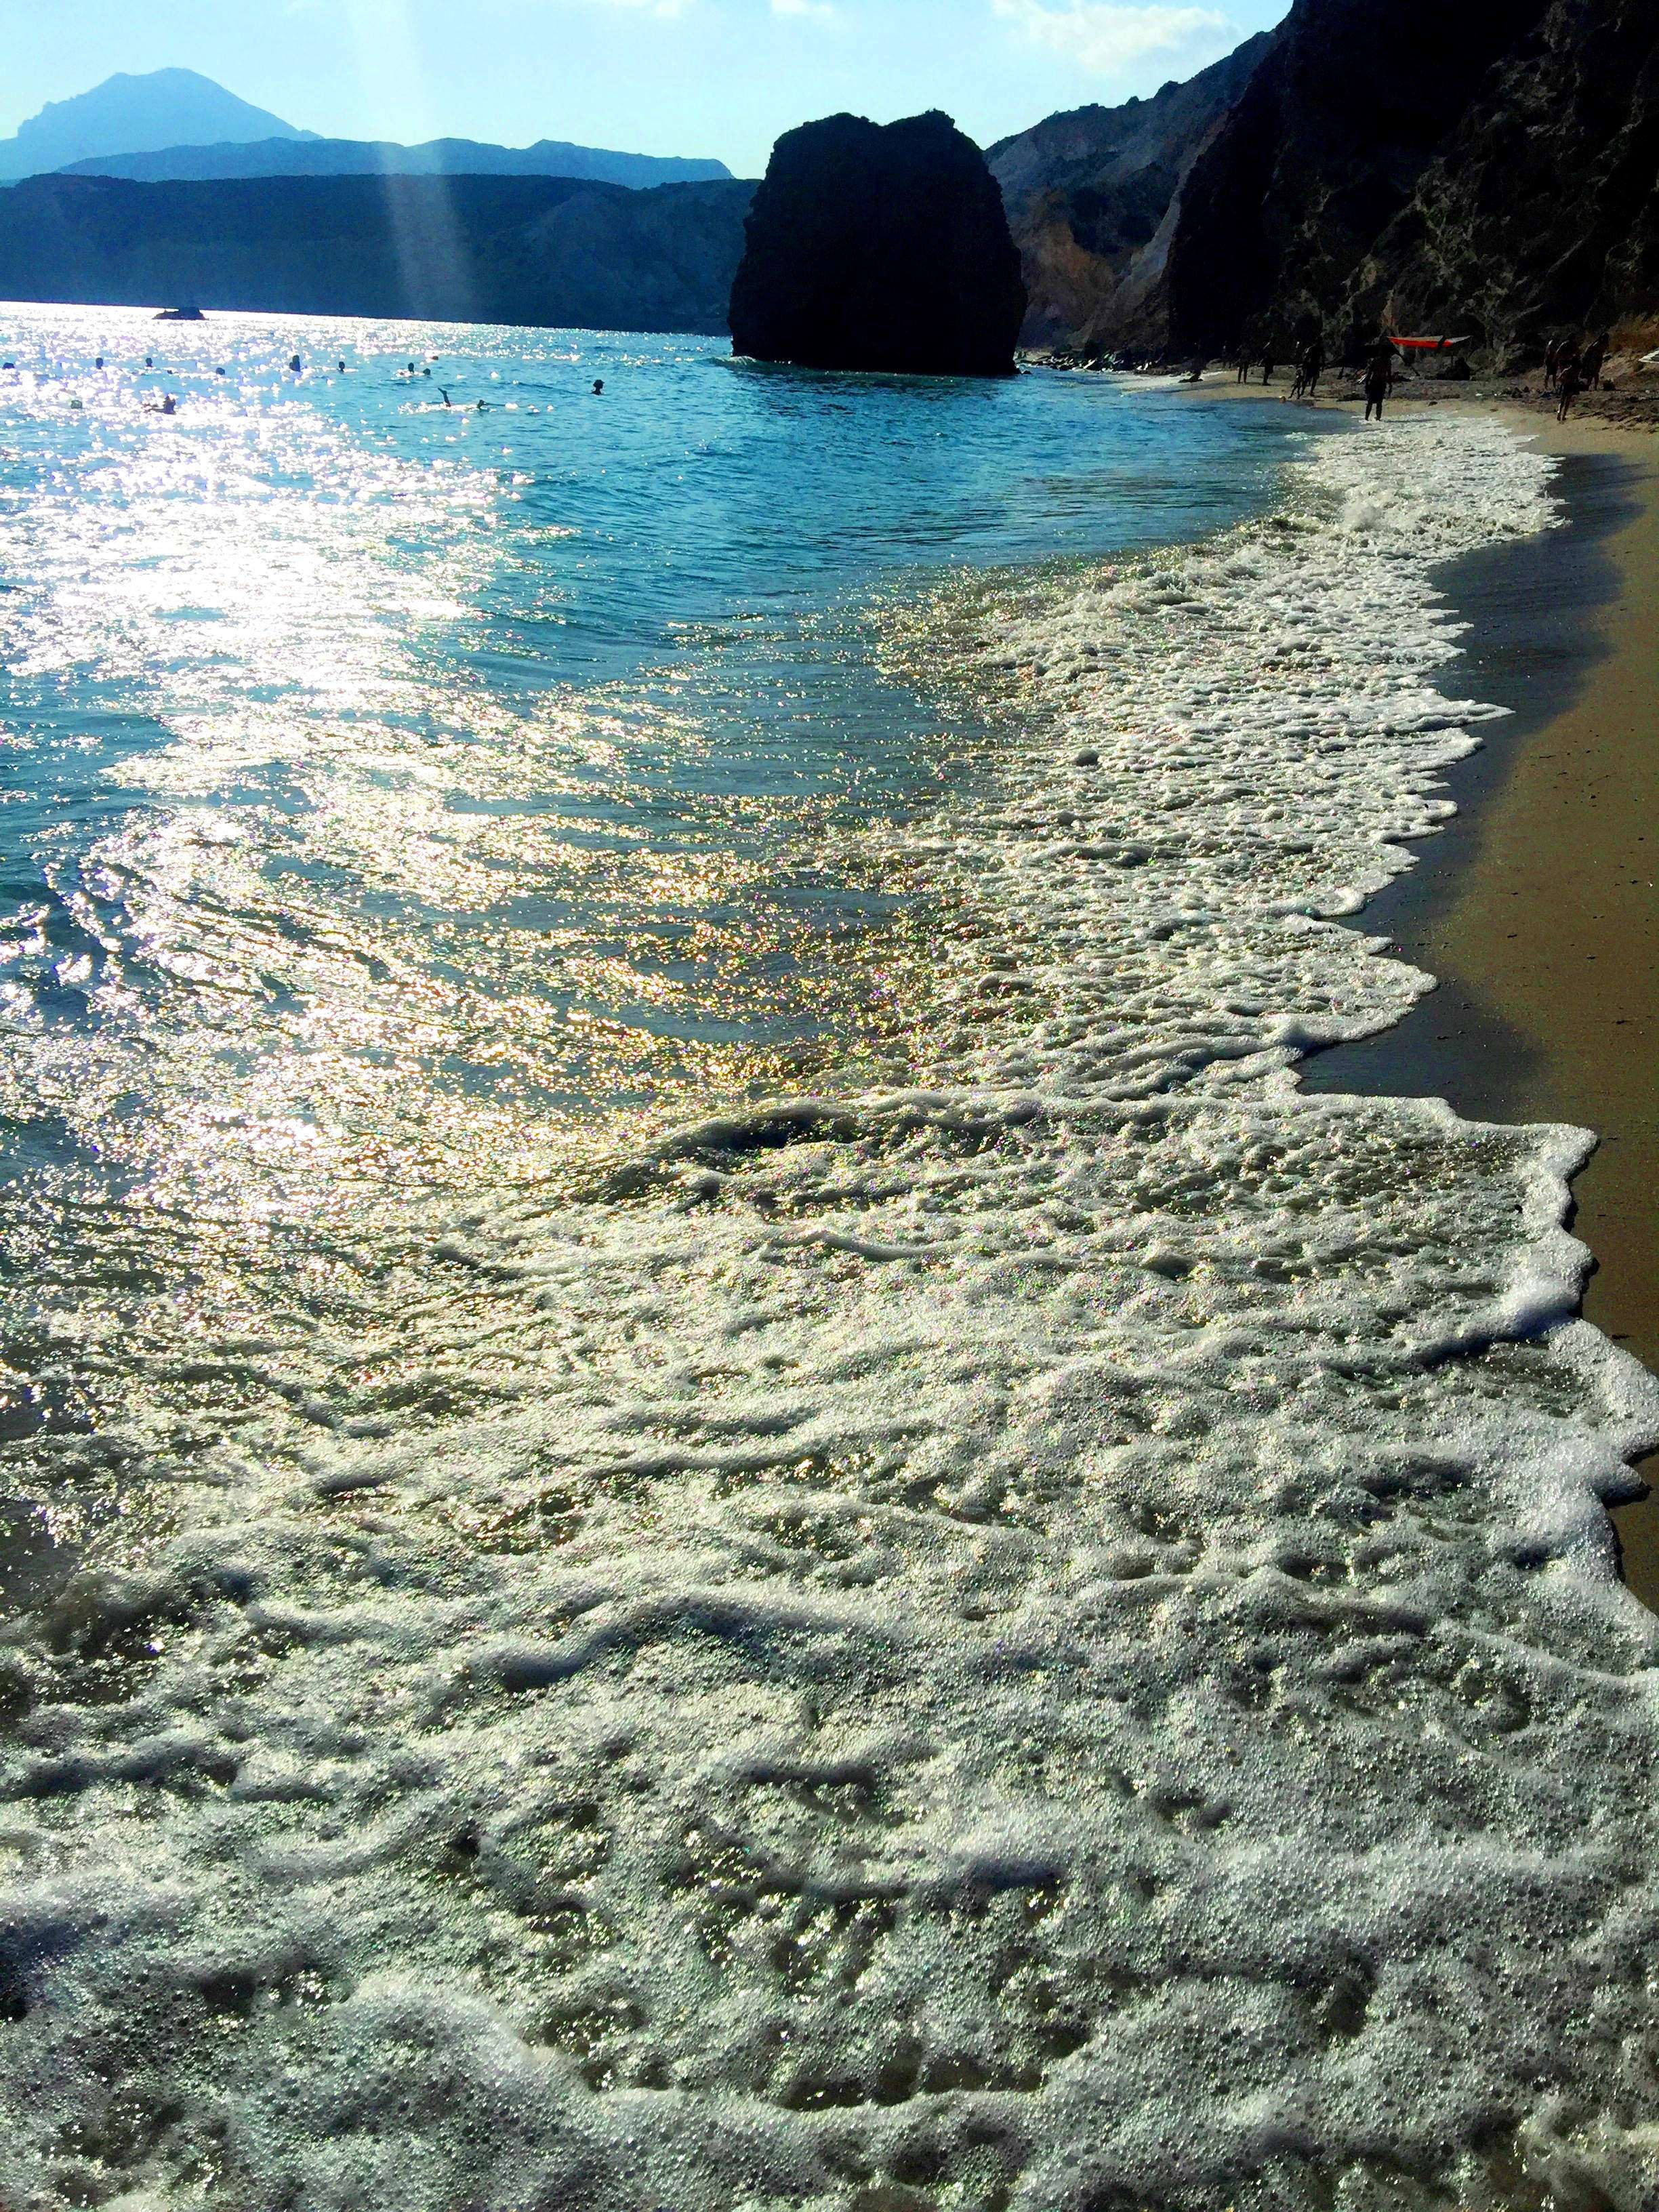 Ο top covid-19 free  προορισμός είναι το νησί με τις ωραιότερες παραλίες στην Ελλάδα (Pics)